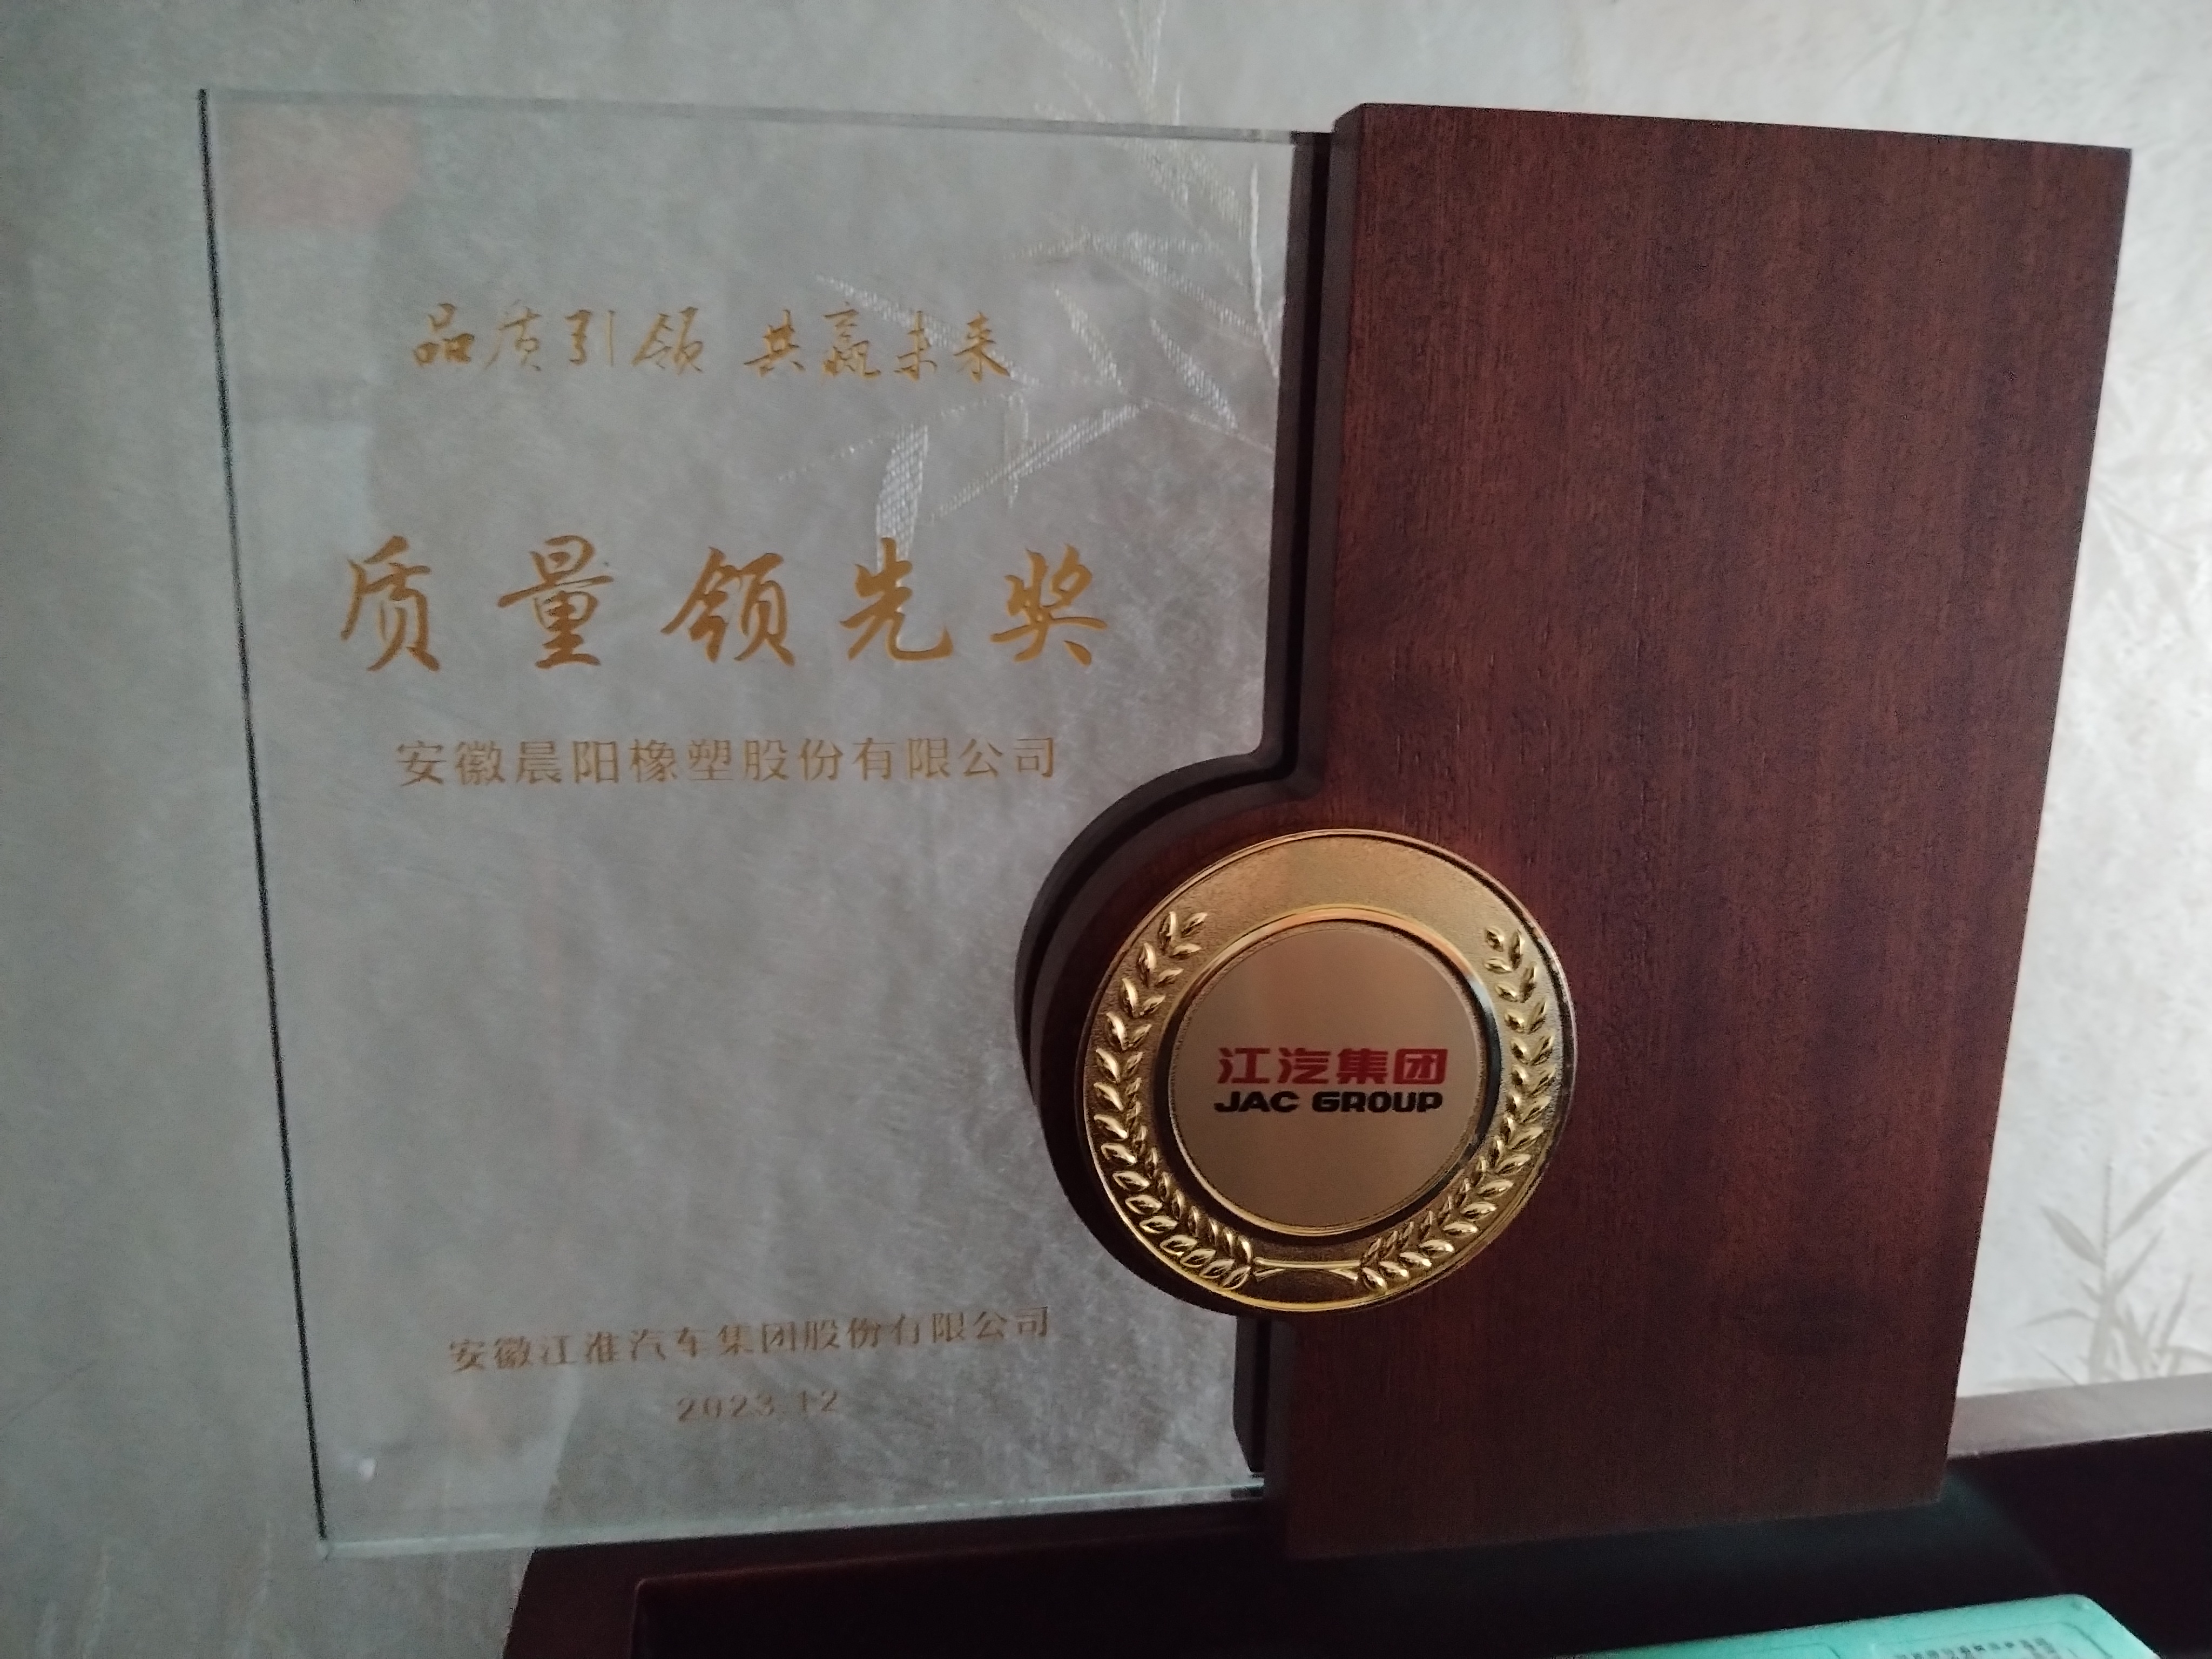 热烈祝贺我公司荣获江汽集团“质量领先奖”荣誉称号